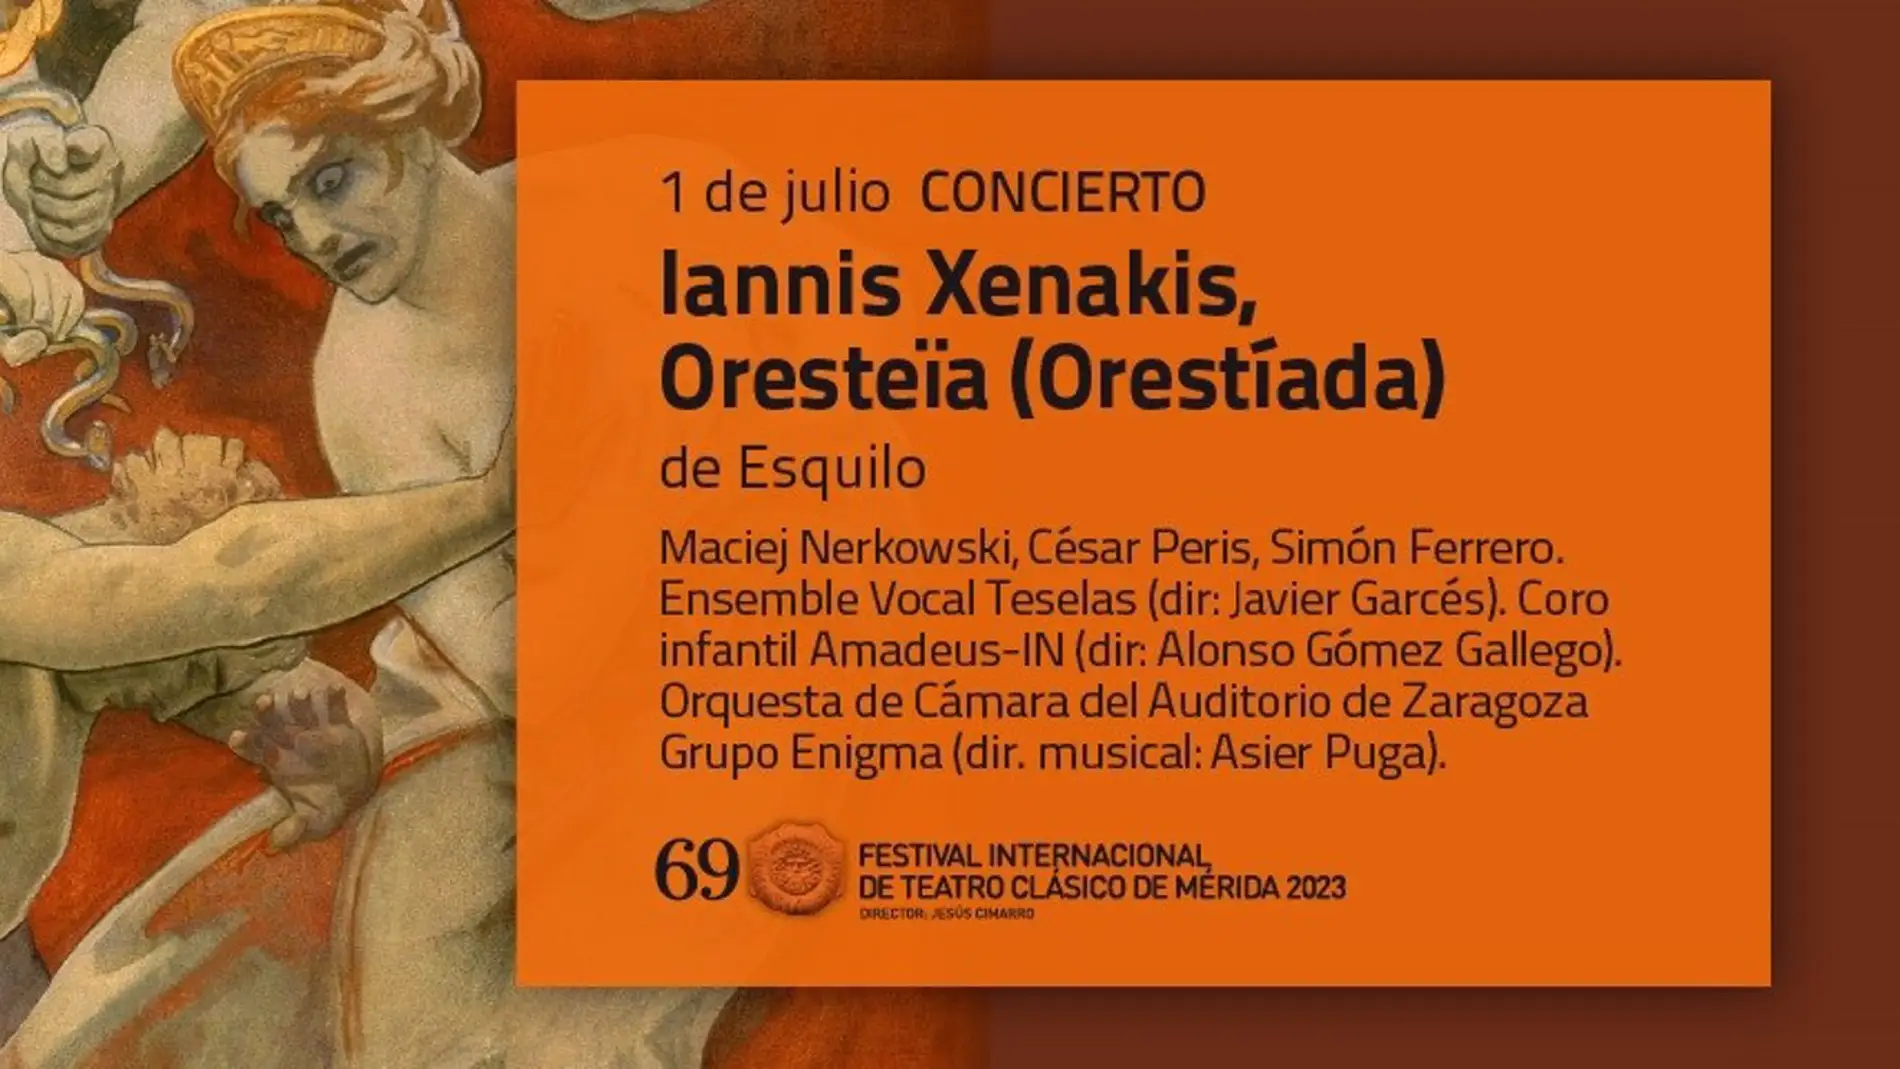 Un concierto sobre la "Oresteïa" dará inicio el sábado 1 de julio a la 69 edición del Festival Internacional de Teatro Clásico de Mérida